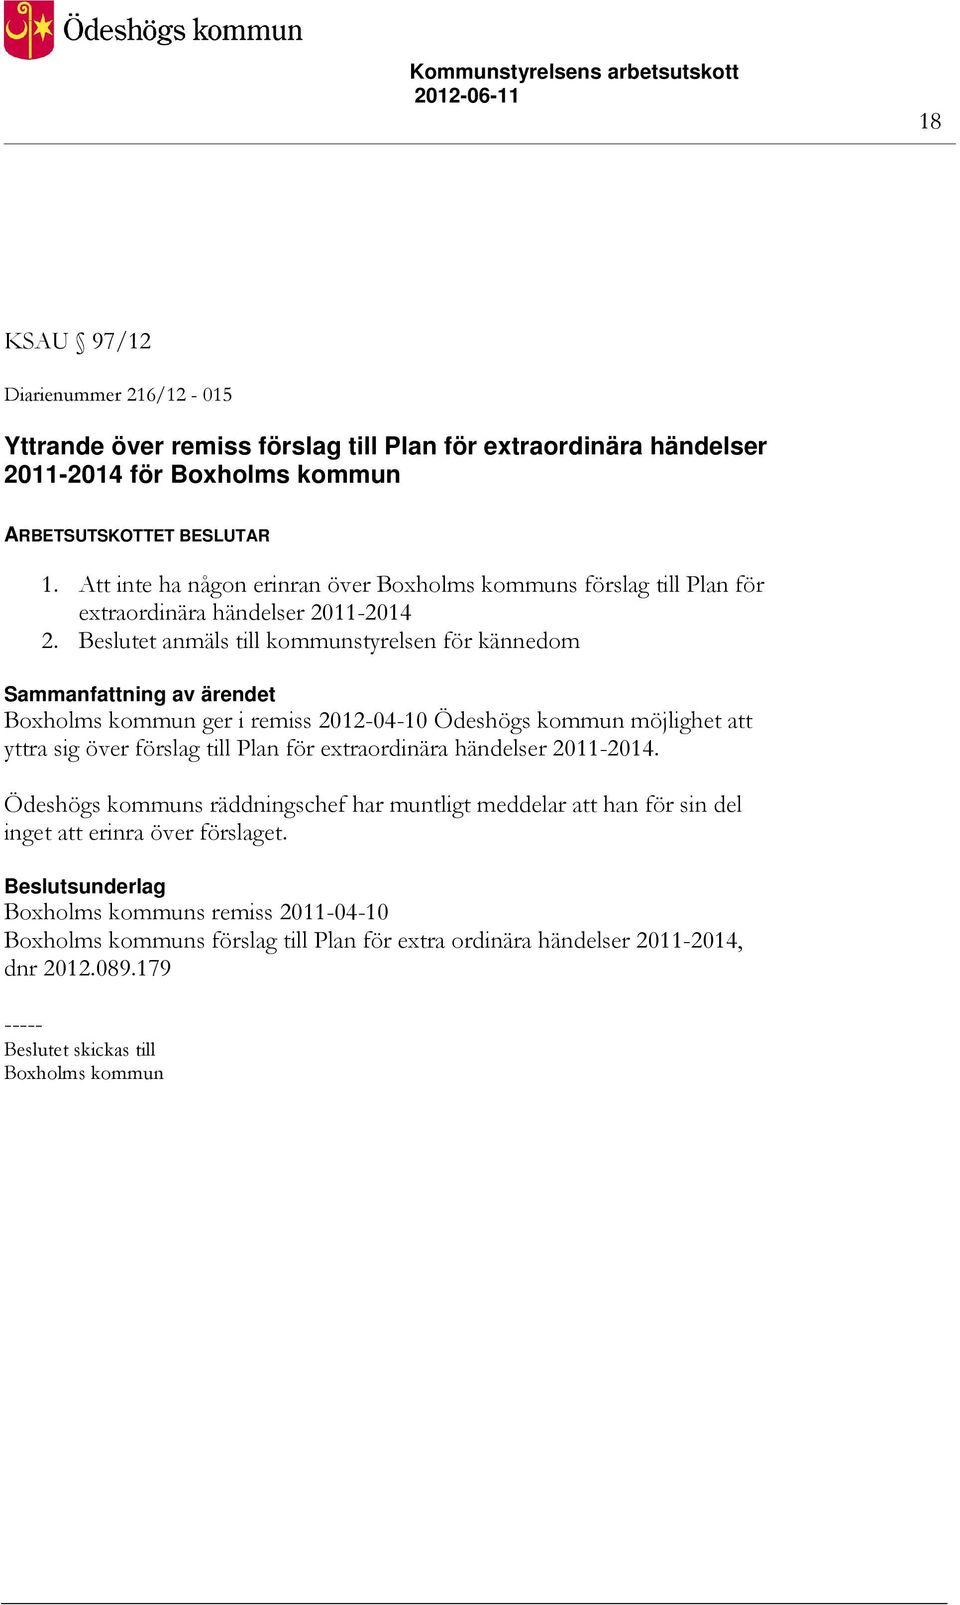 Beslutet anmäls till kommunstyrelsen för kännedom Boxholms kommun ger i remiss 2012-04-10 Ödeshögs kommun möjlighet att yttra sig över förslag till Plan för extraordinära händelser